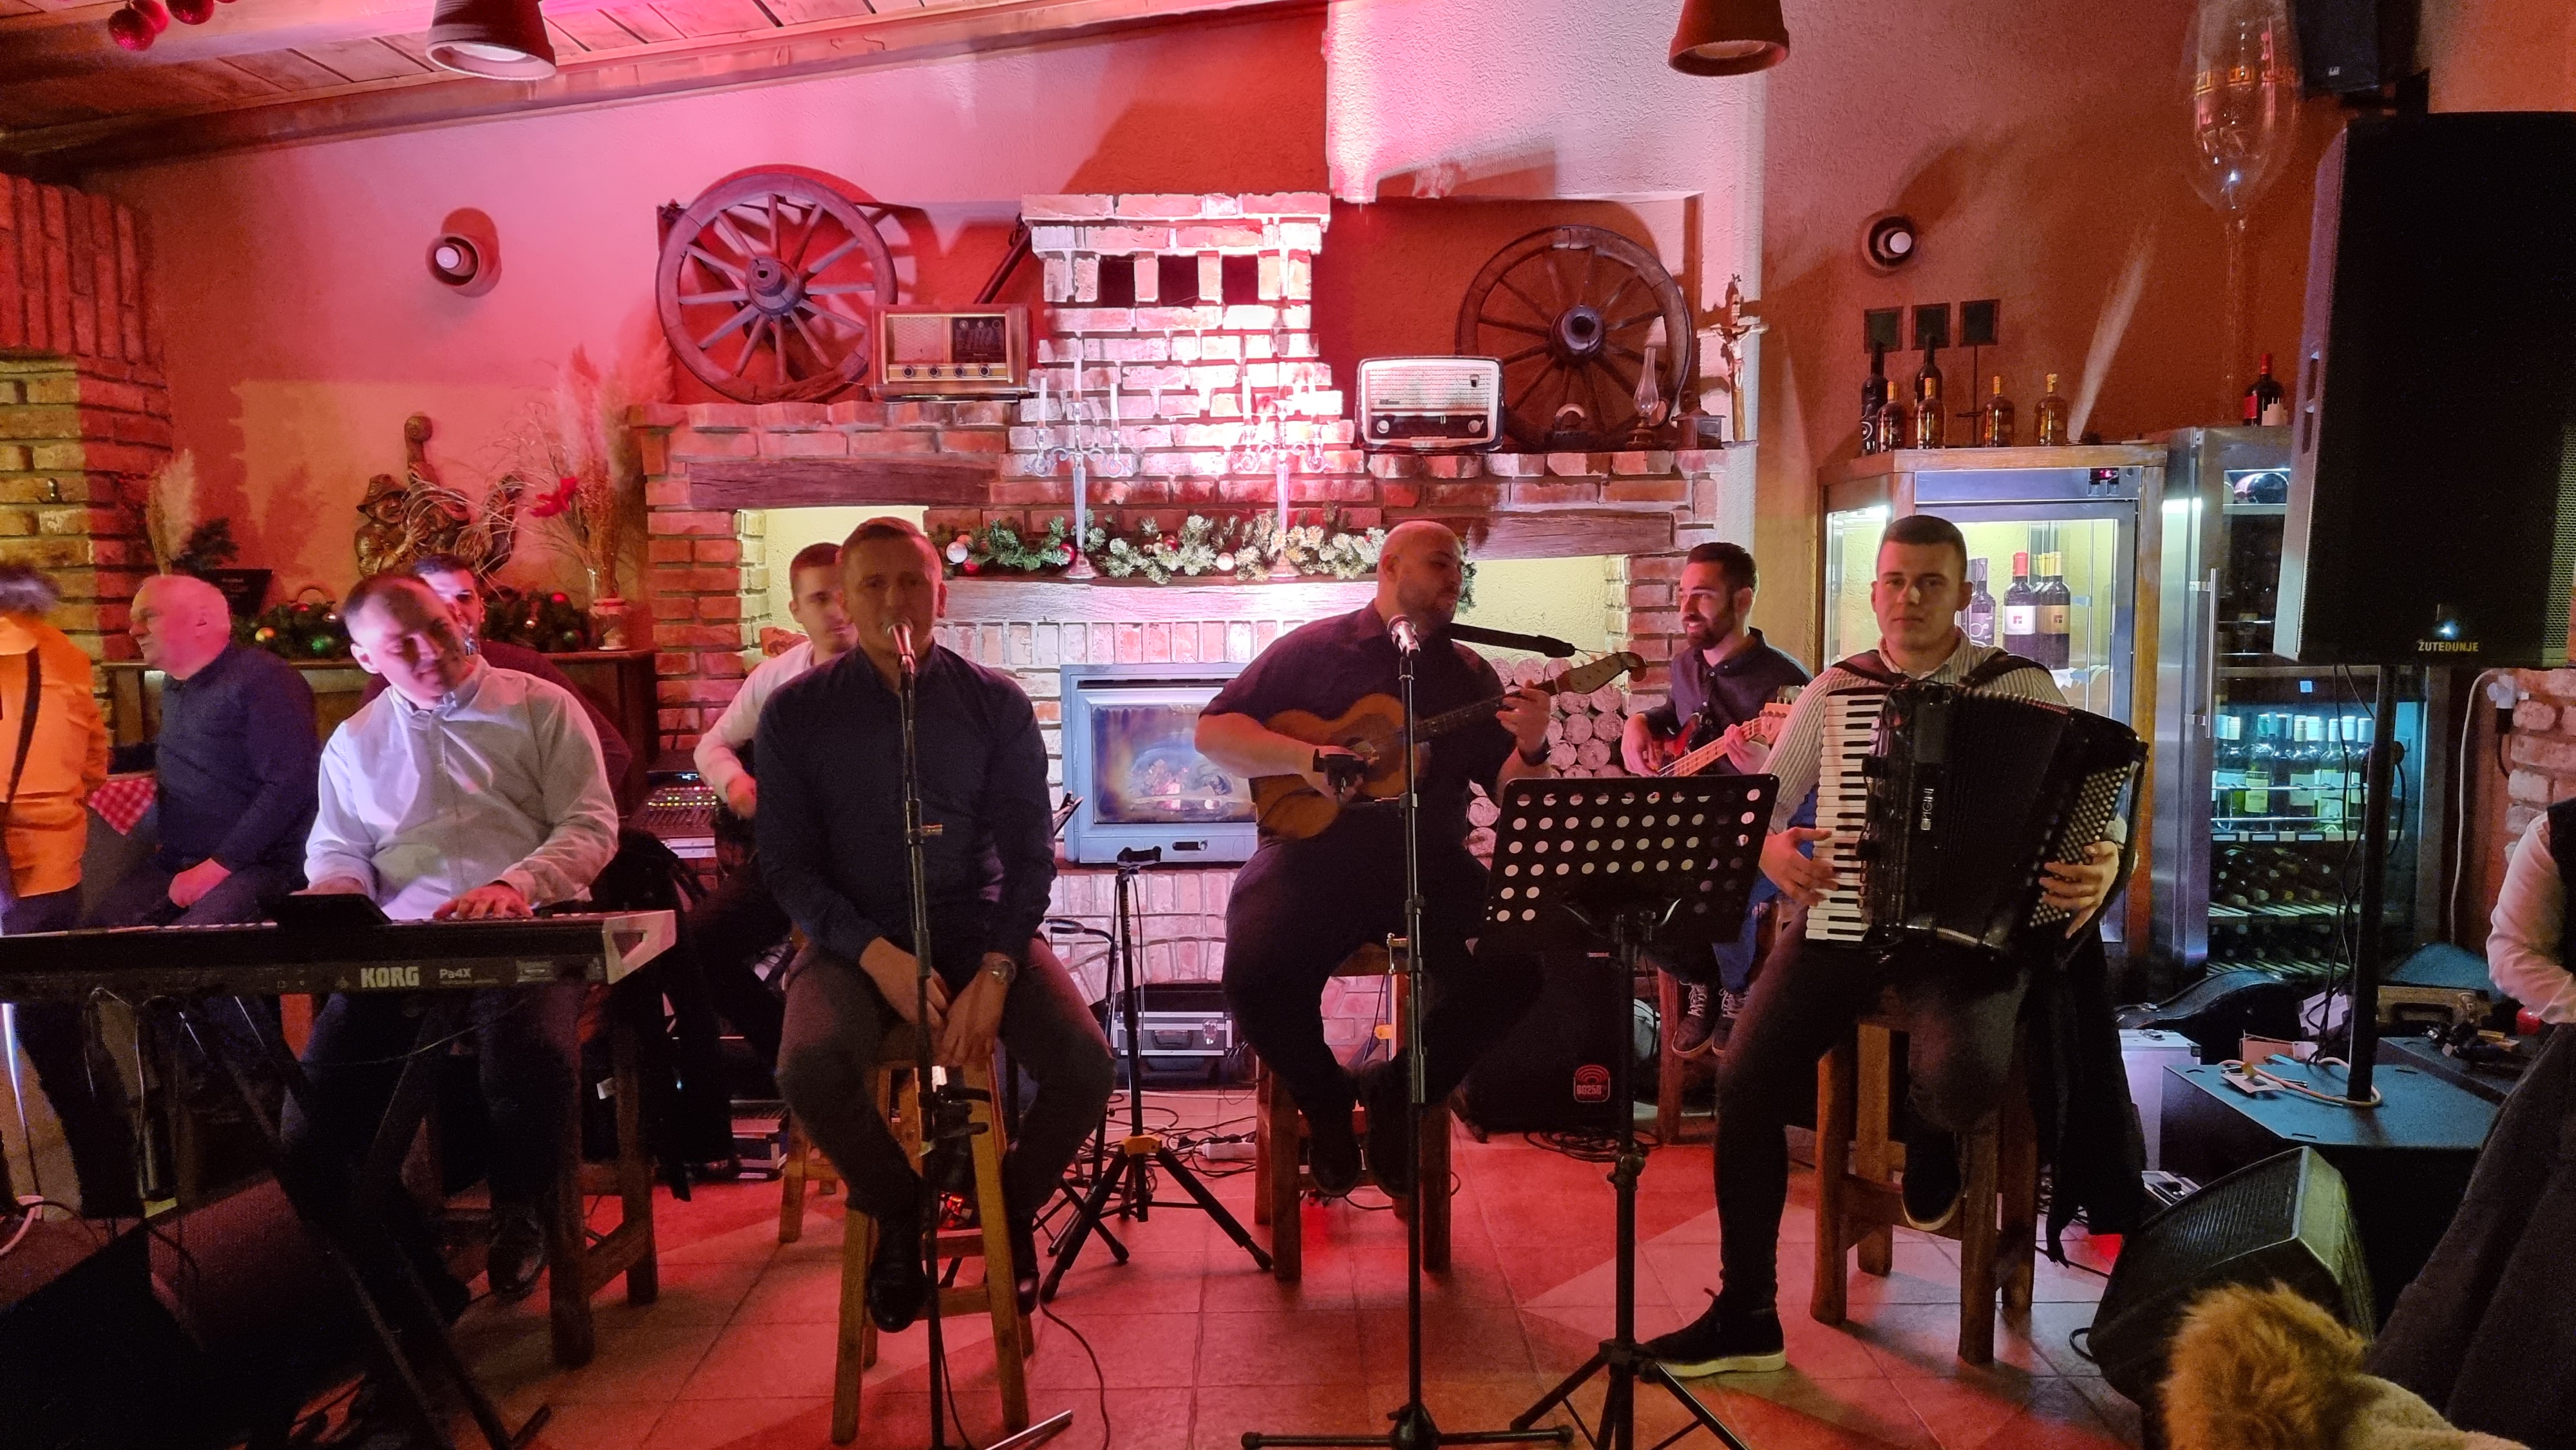 Požega.eu | Brojni obožavatelje legendarnog Tome Zdravkovića uživali slušajući njegove pjesme u izvođenju vrsnih svirača [FOTO]